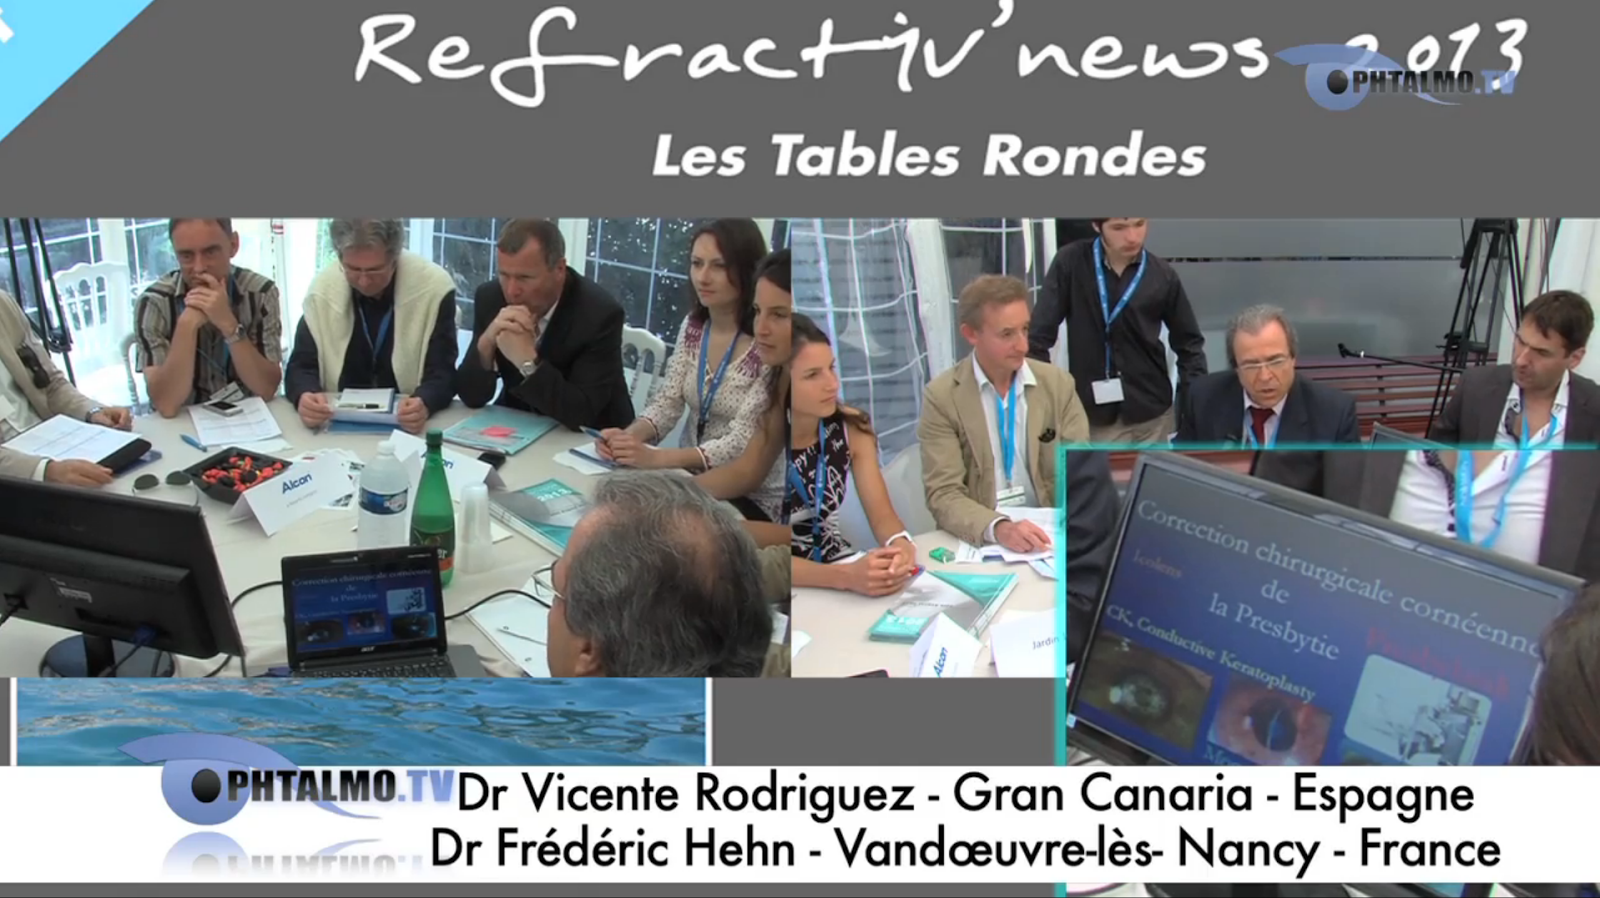 El Dr. Vicente Rodríguez participa en Refractiv’News 2013